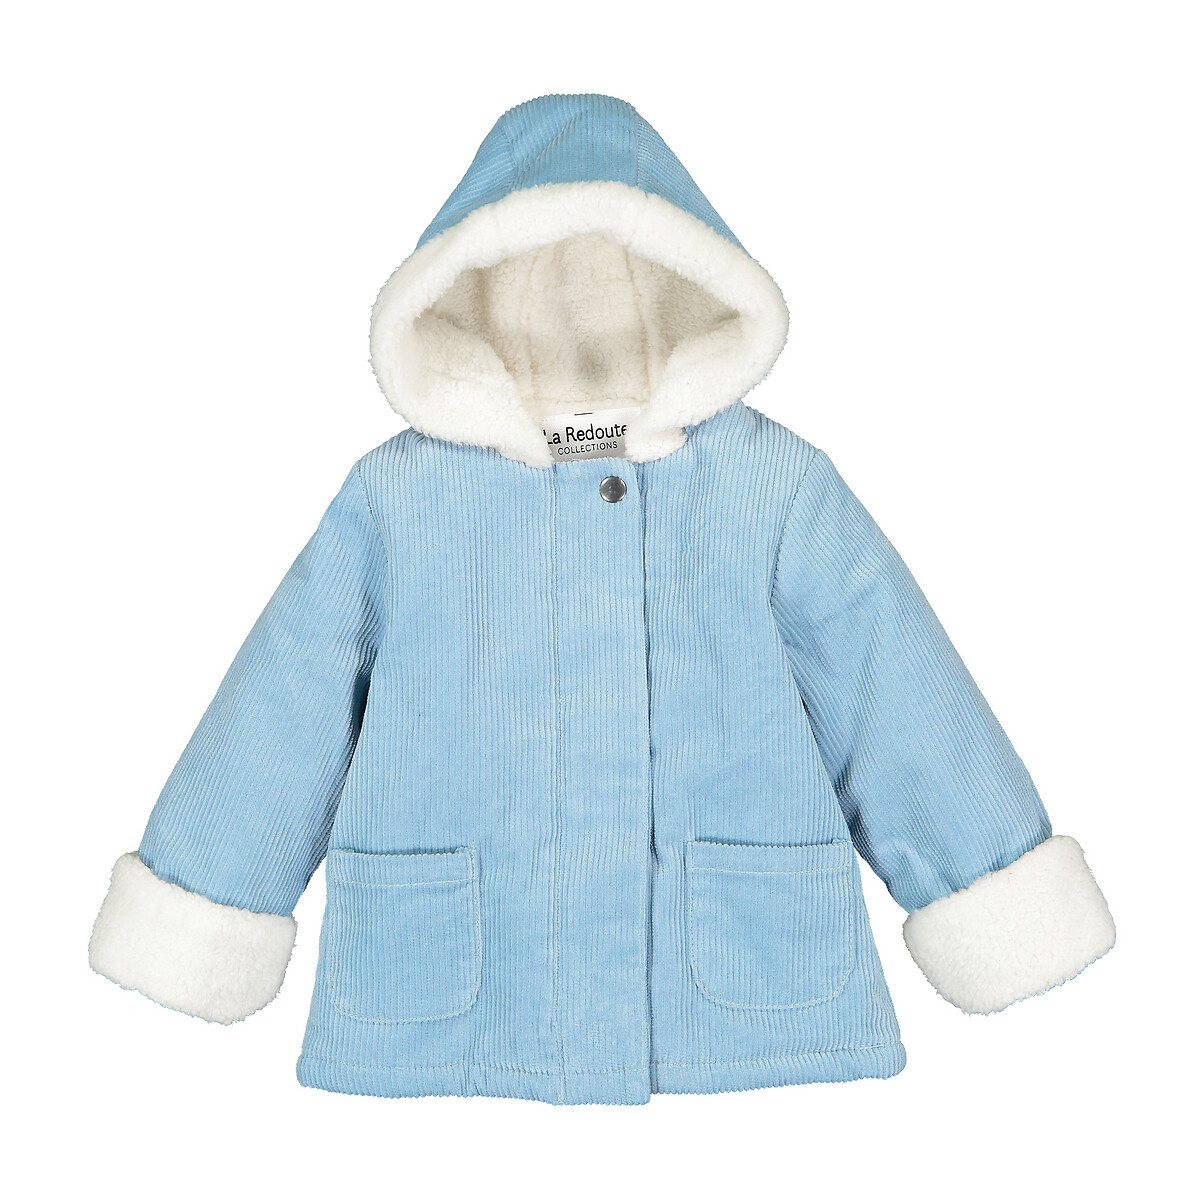 Пальто La Redoute Утепленное из велюра с капюшоном 3 мес-4 года 4 года - 102 см синий, размер 4 года - 102 см - фото 1